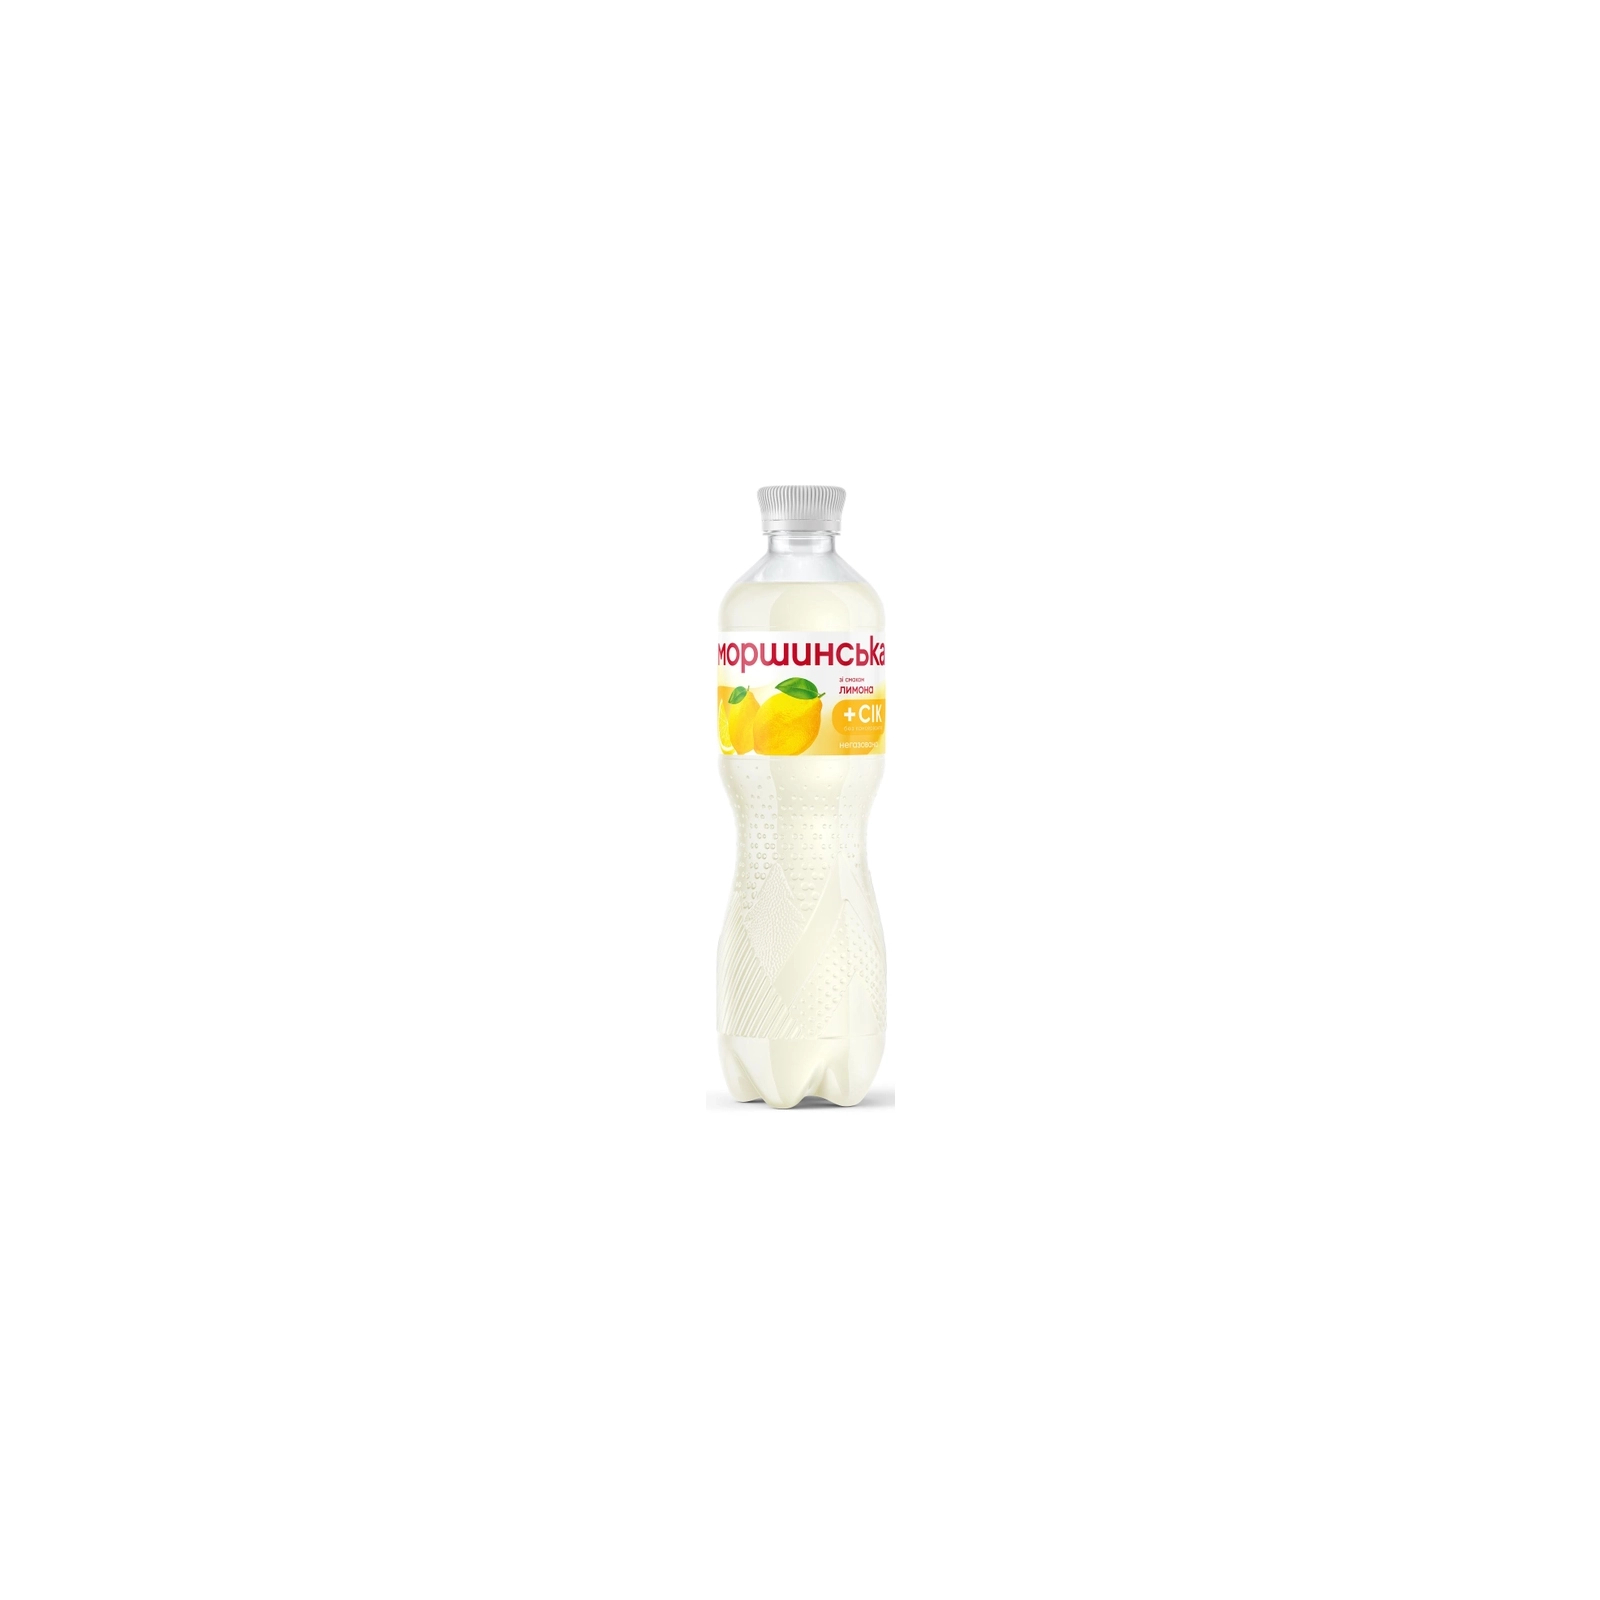 Напиток Моршинська сокосодержащий негазированный со вкусом лимона 1.5 л (4820017002561)